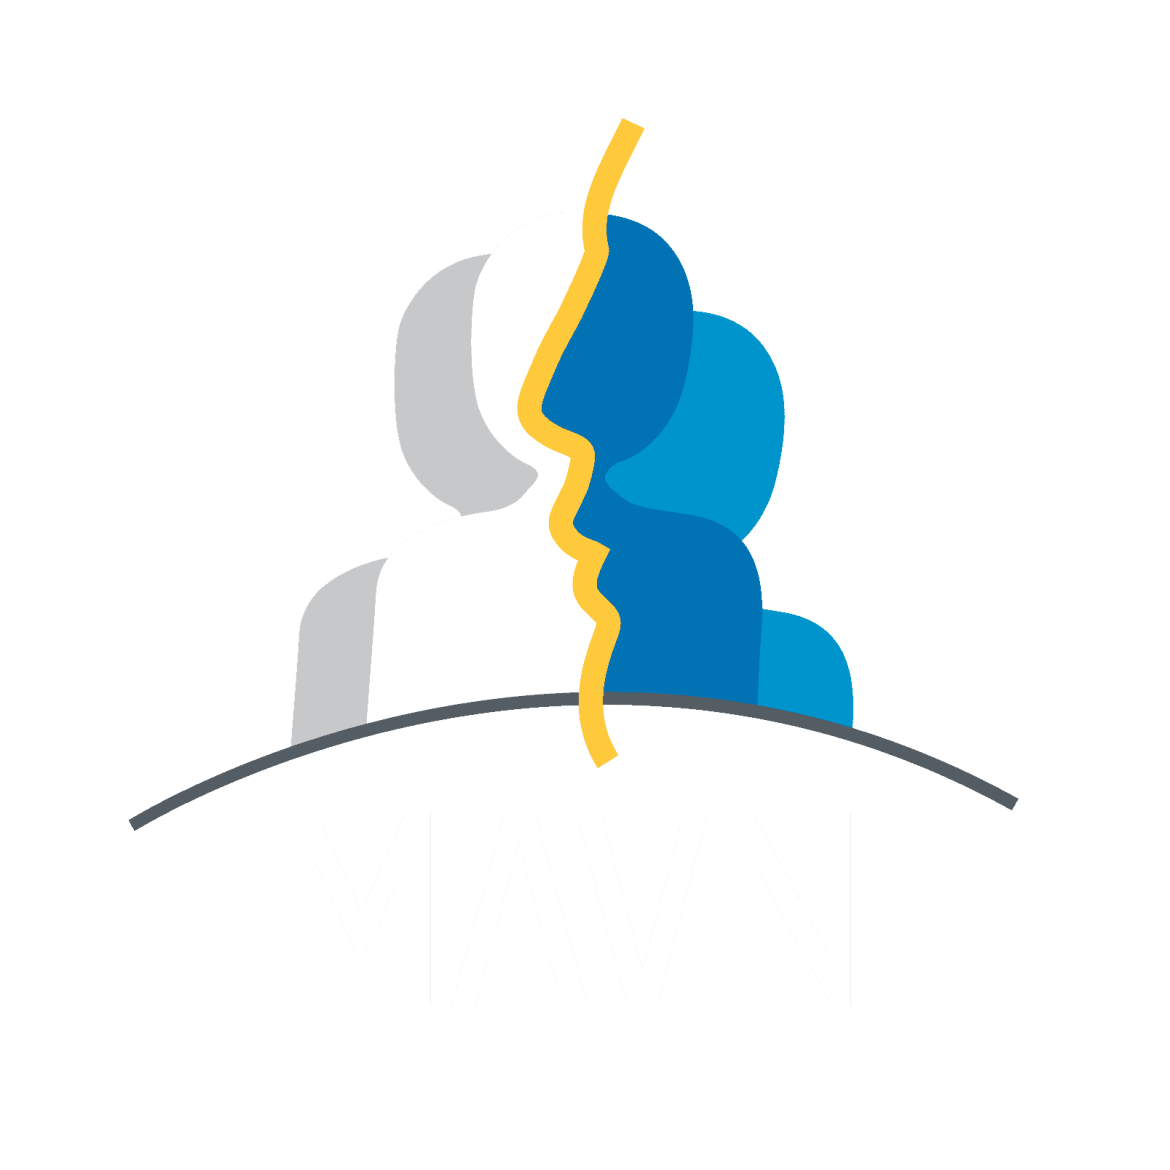 MAVN-LOGO-renv-1.png